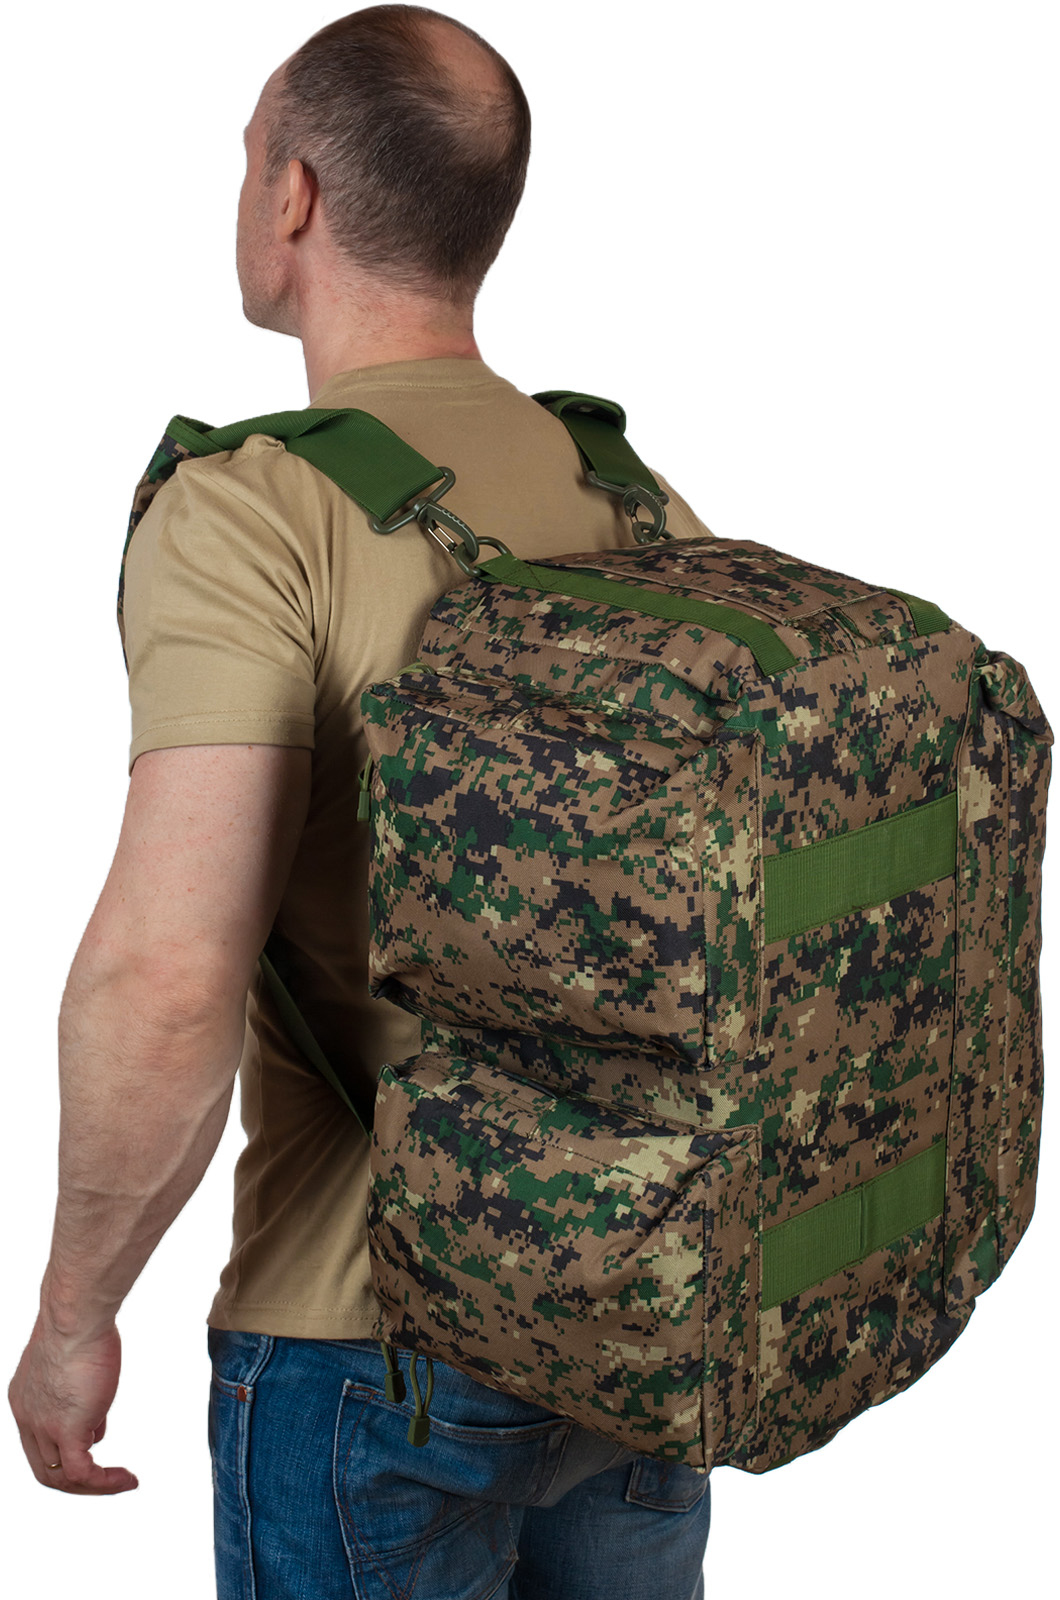 Армейская дорожная сумка с нашивкой Росгвардия 